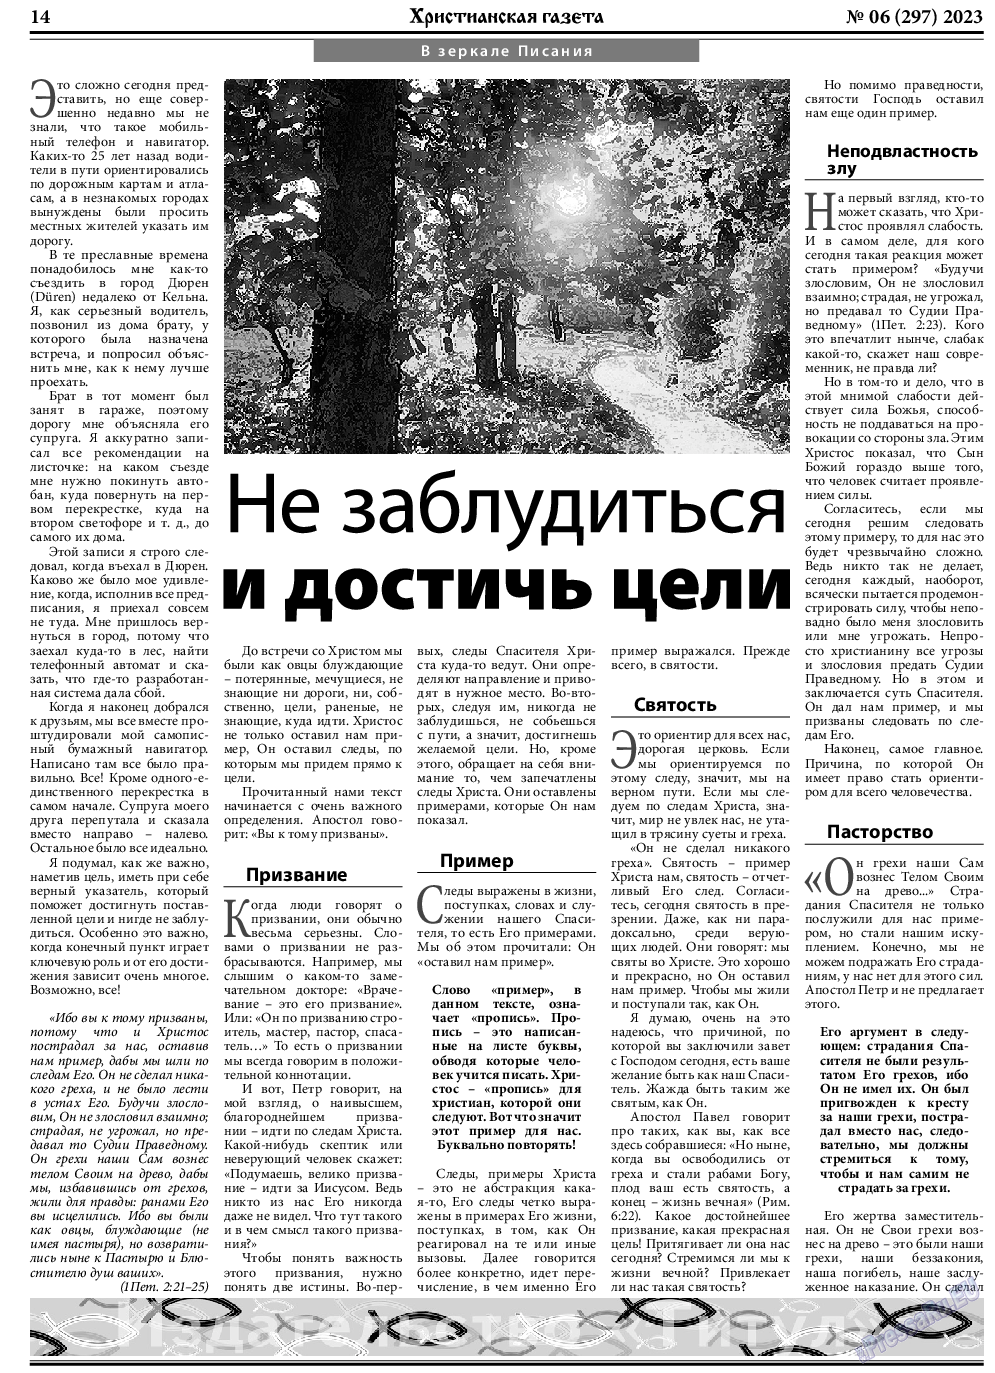 Христианская газета, газета. 2023 №6 стр.14